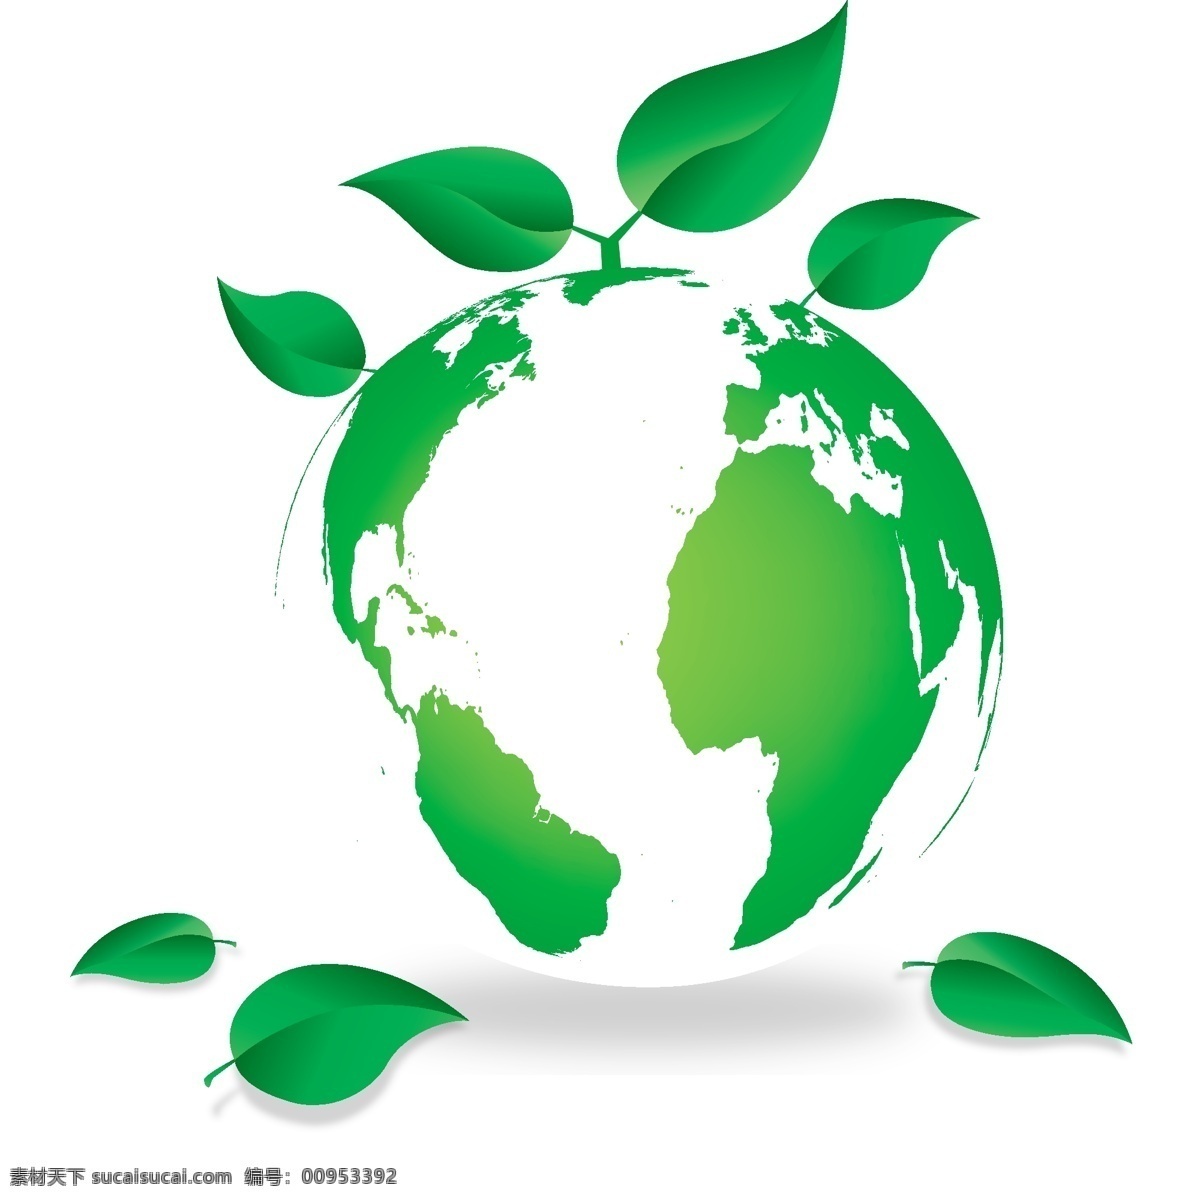 保护环境 低碳生活 底纹背景 底纹边框 地球 环保 环境保护 节能 节能减排 绿叶 星球 背景 矢量 模板下载 绿叶星球背景 树叶 叶子 卡通 漫画 绿色 清洁能源 底纹 海报 环保公益海报